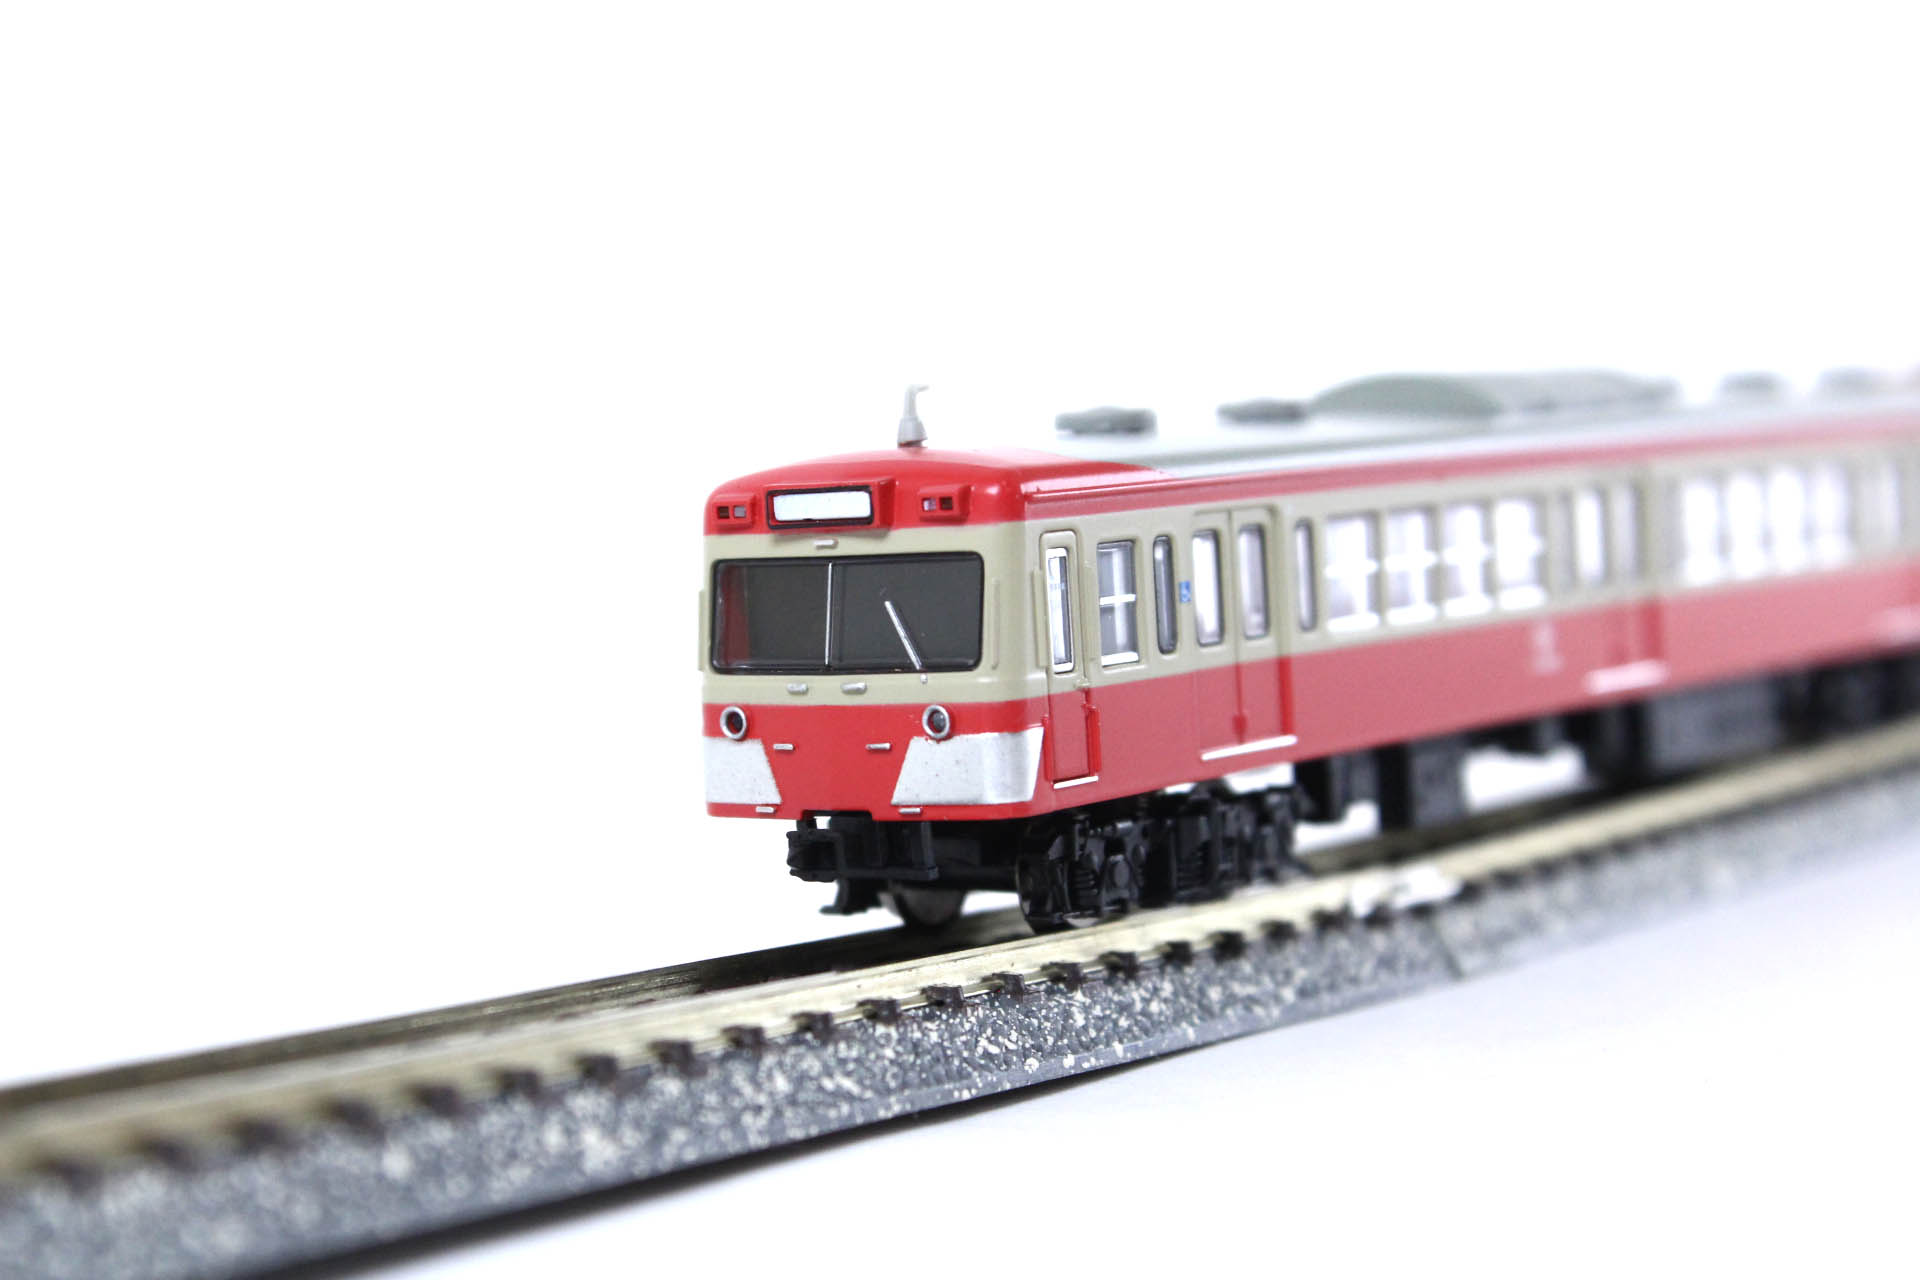 マイクロエース A1068 伊豆箱根鉄道 1100系・赤電塗装 ３両セット N